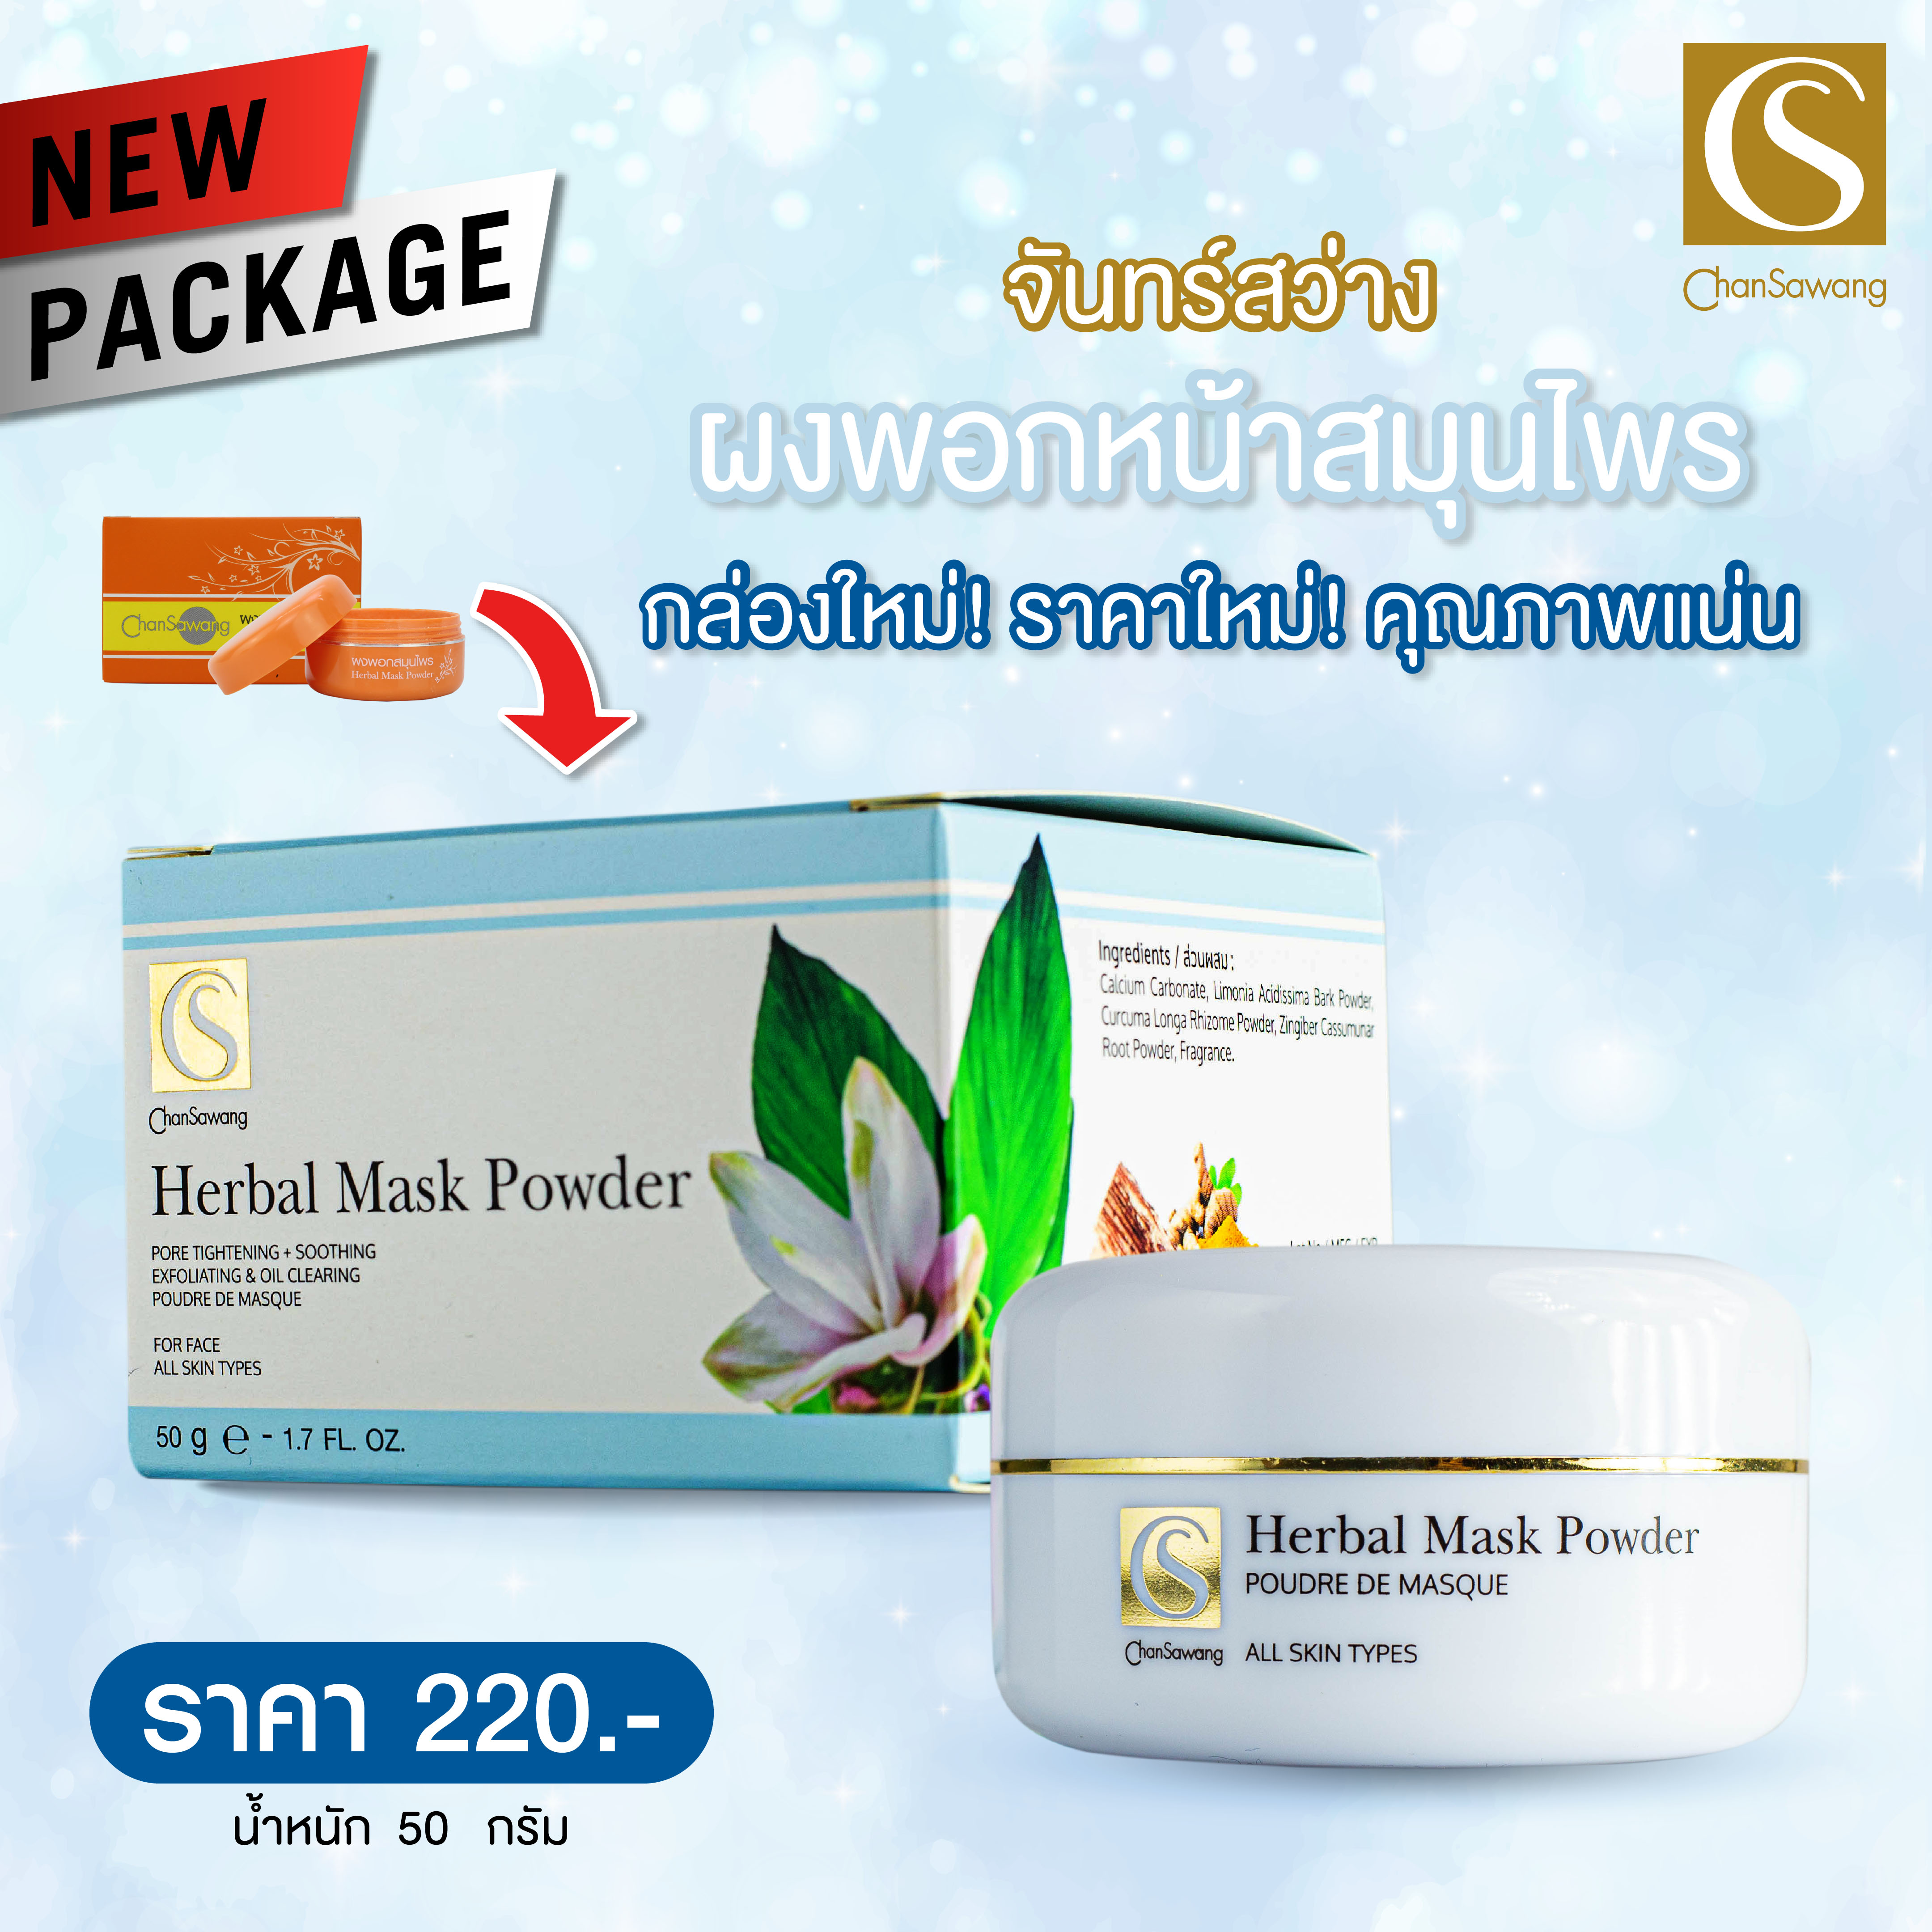 แนะนำ ChanSawang Herbal Mask Powder ผงพอกหน้าสมุนไพร จันทร์สว่าง 50g